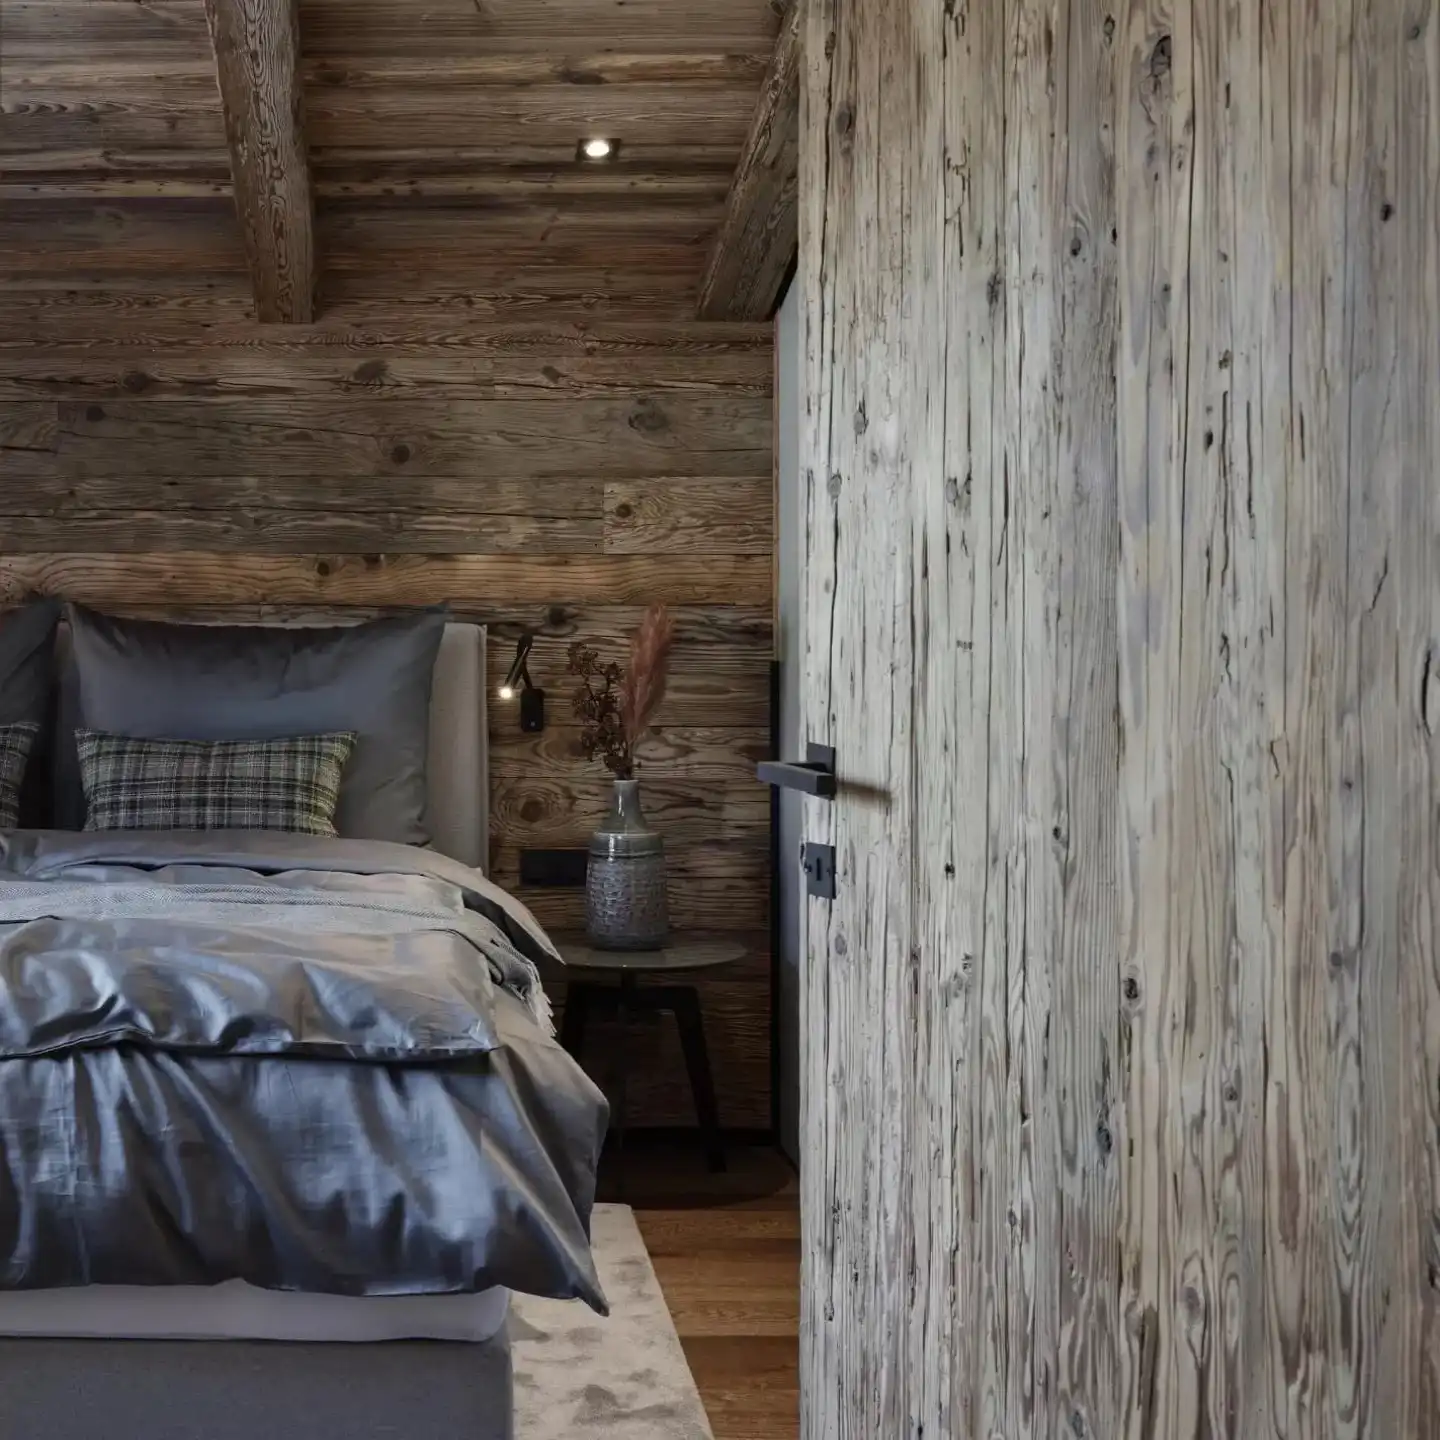  Une chambre avec des murs en bois vieilli et un lit. 